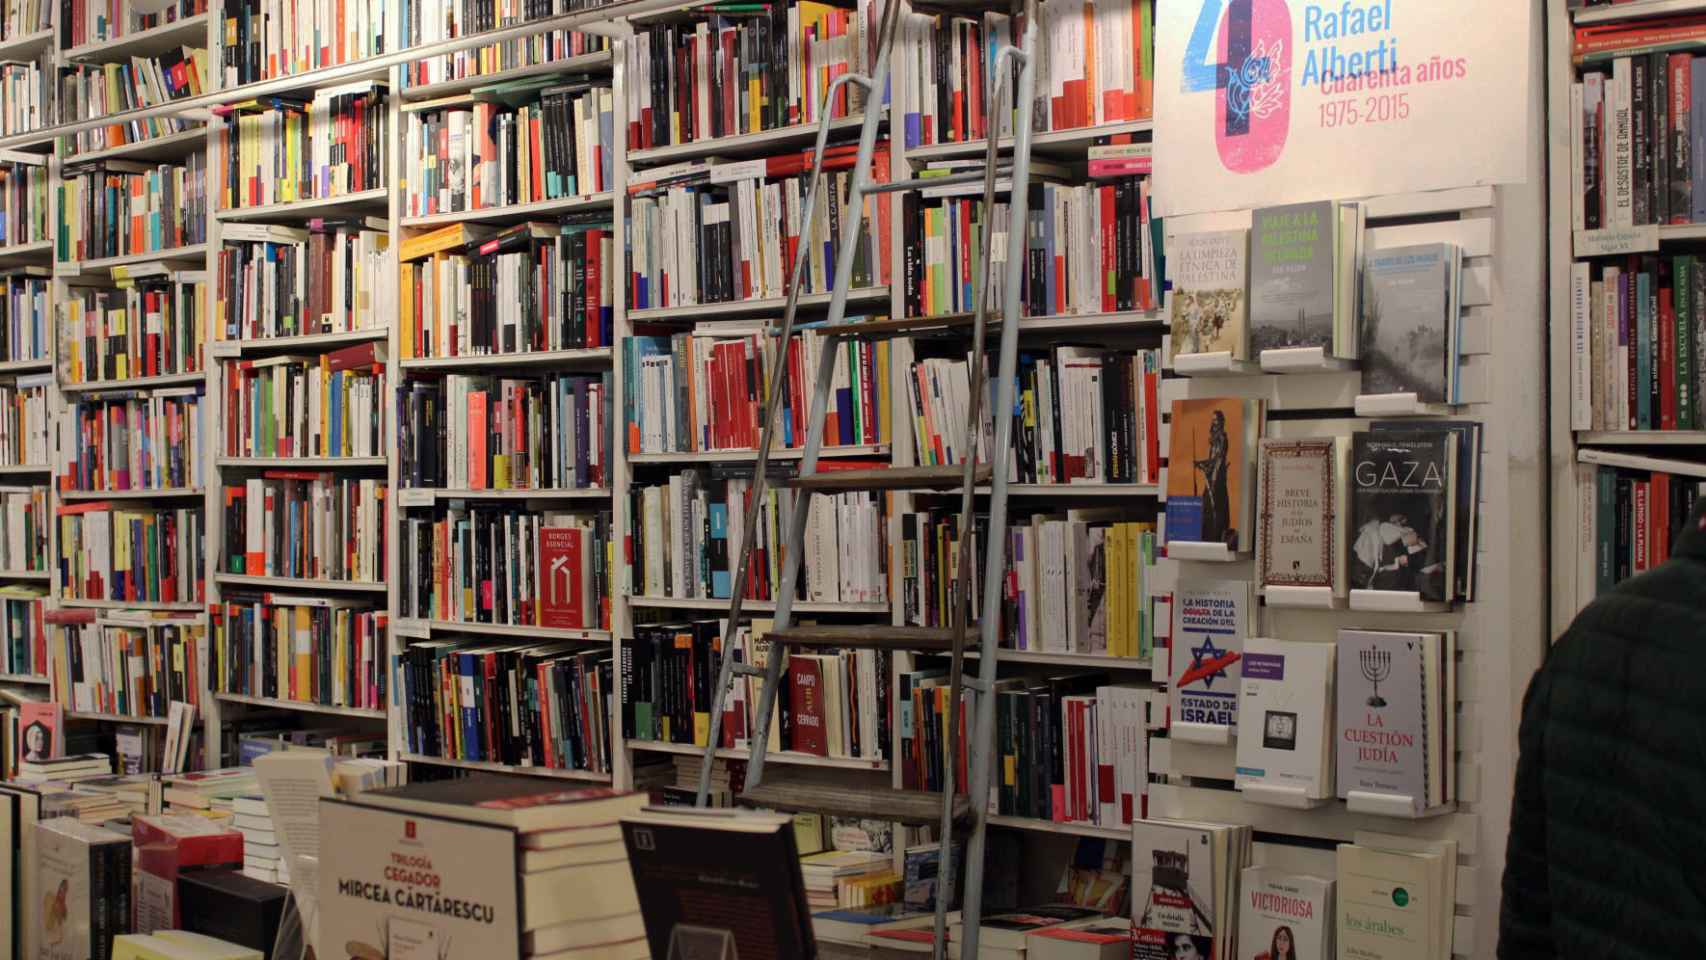 La librería Rafael Alberti